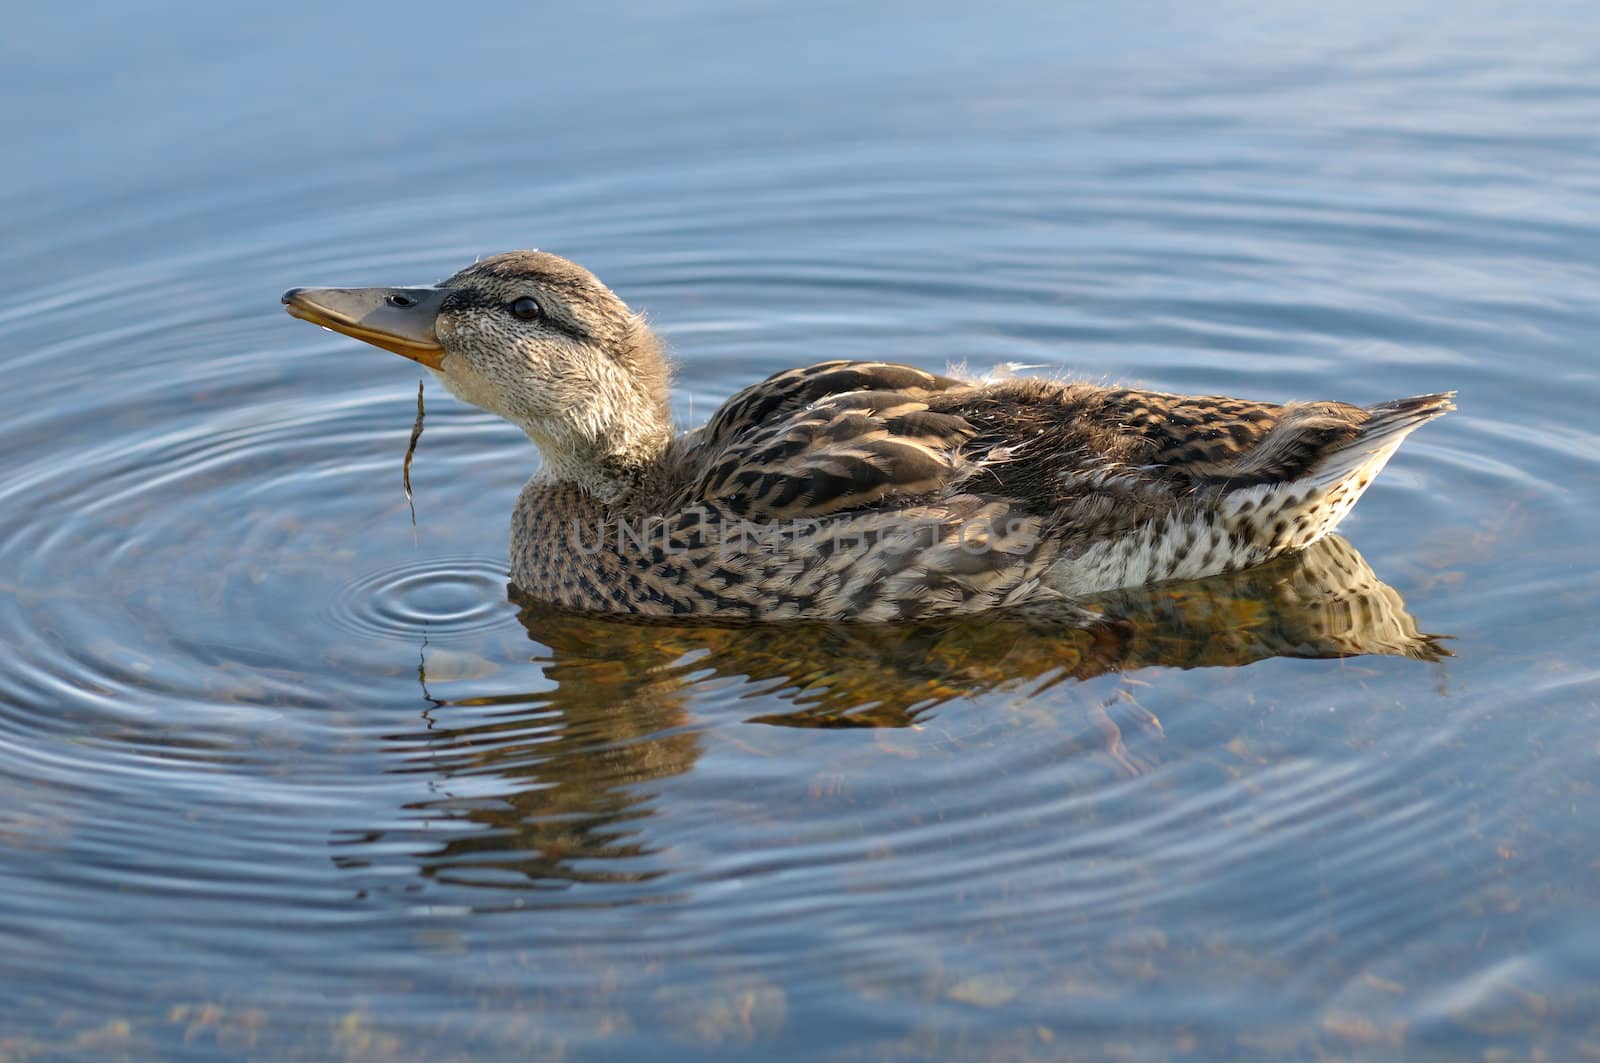 female Mallard duck by Hbak